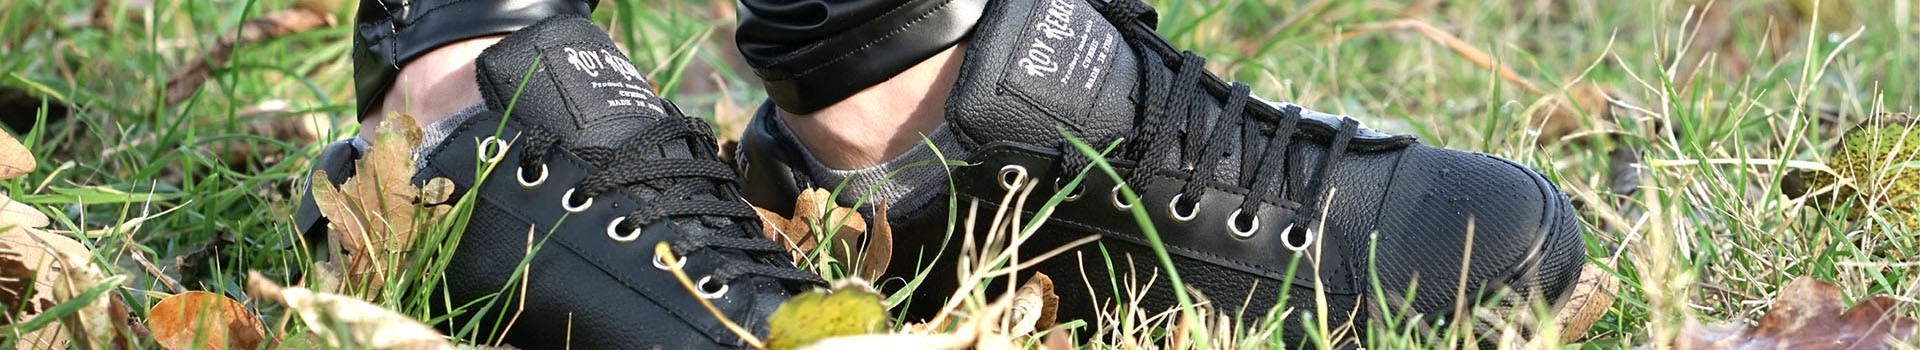 Zapatos Roy Rebel total black sin animales, hidrófugas y antideslizantes